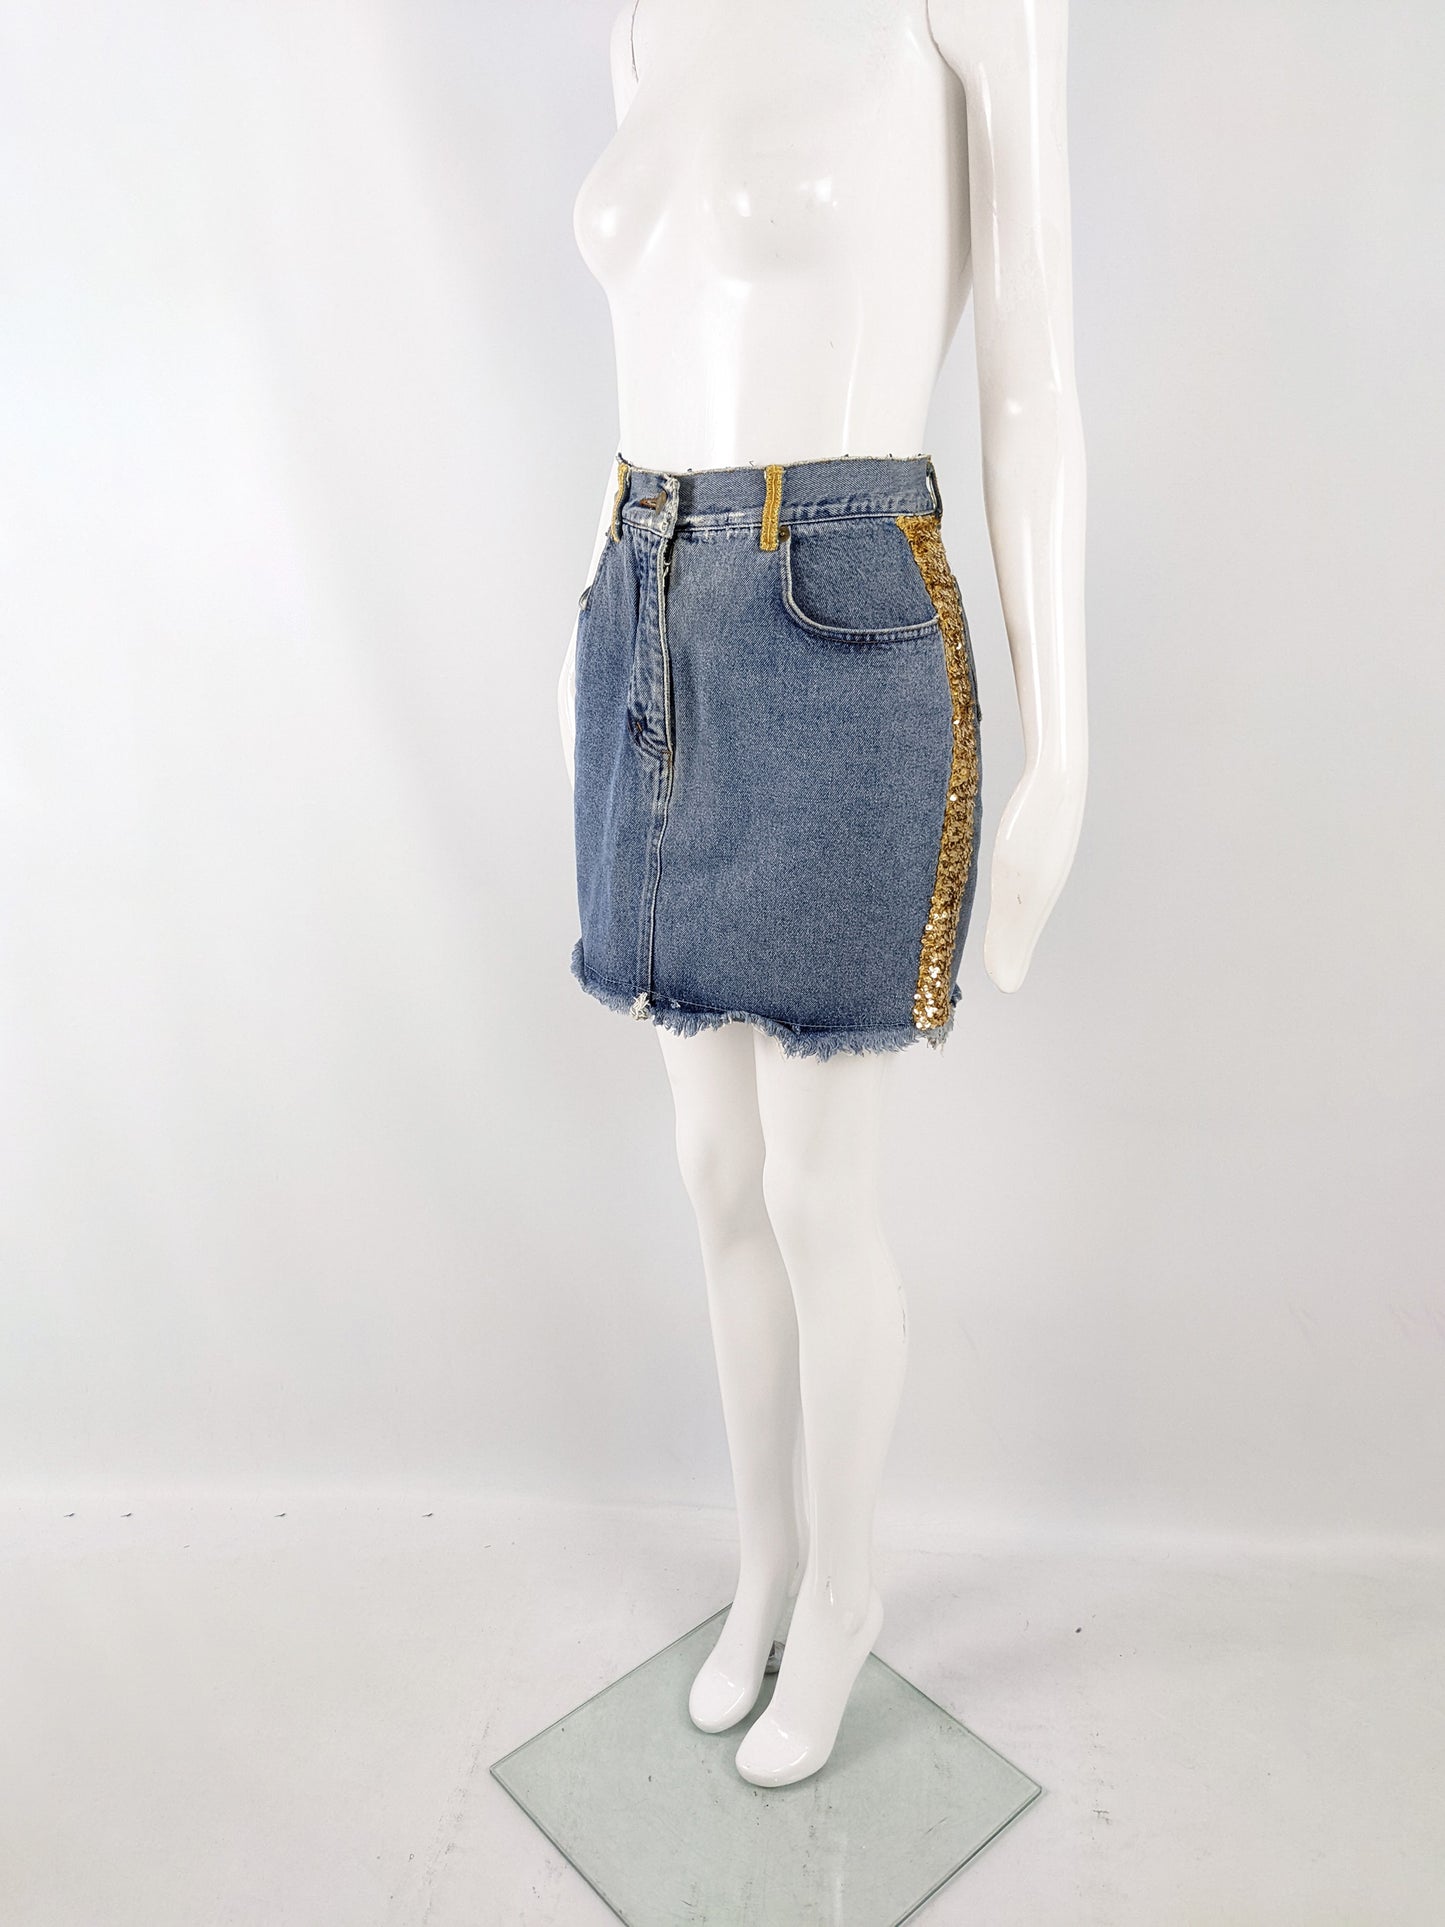 Katharine Hamnett Vintage Blue Denim & Gold Sequin Skirt, 1980s